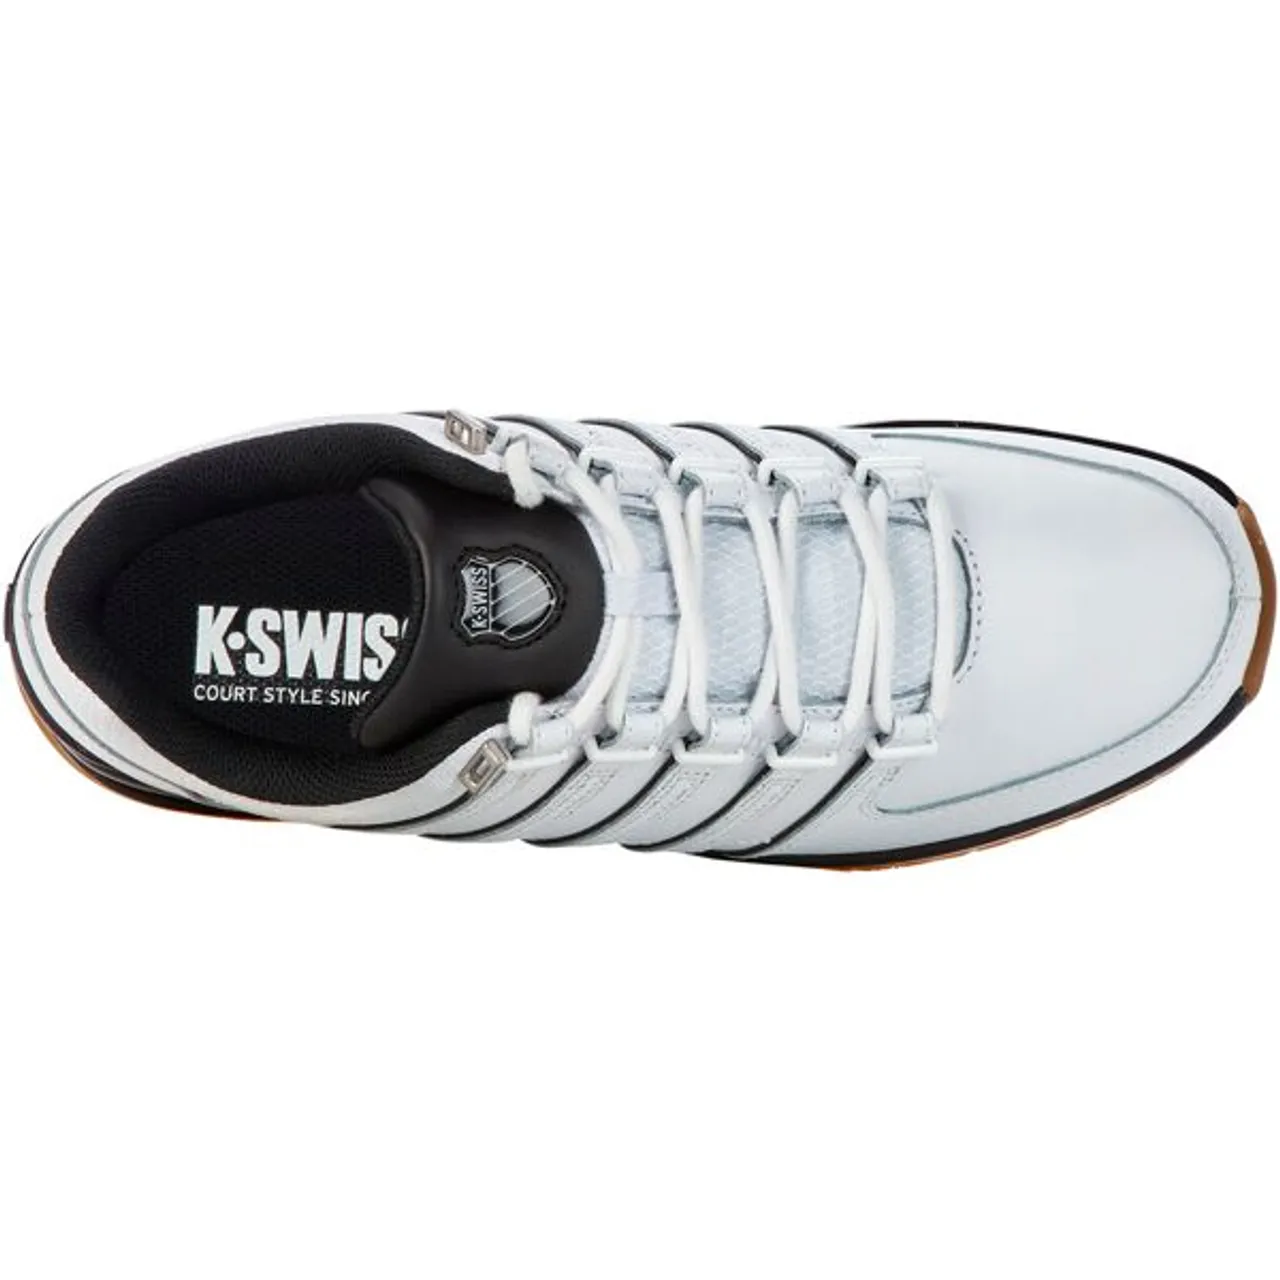 Sneaker K-SWISS "Rinzler" Gr. 43, schwarz-weiß (white, black) Schuhe Schnürhalbschuhe